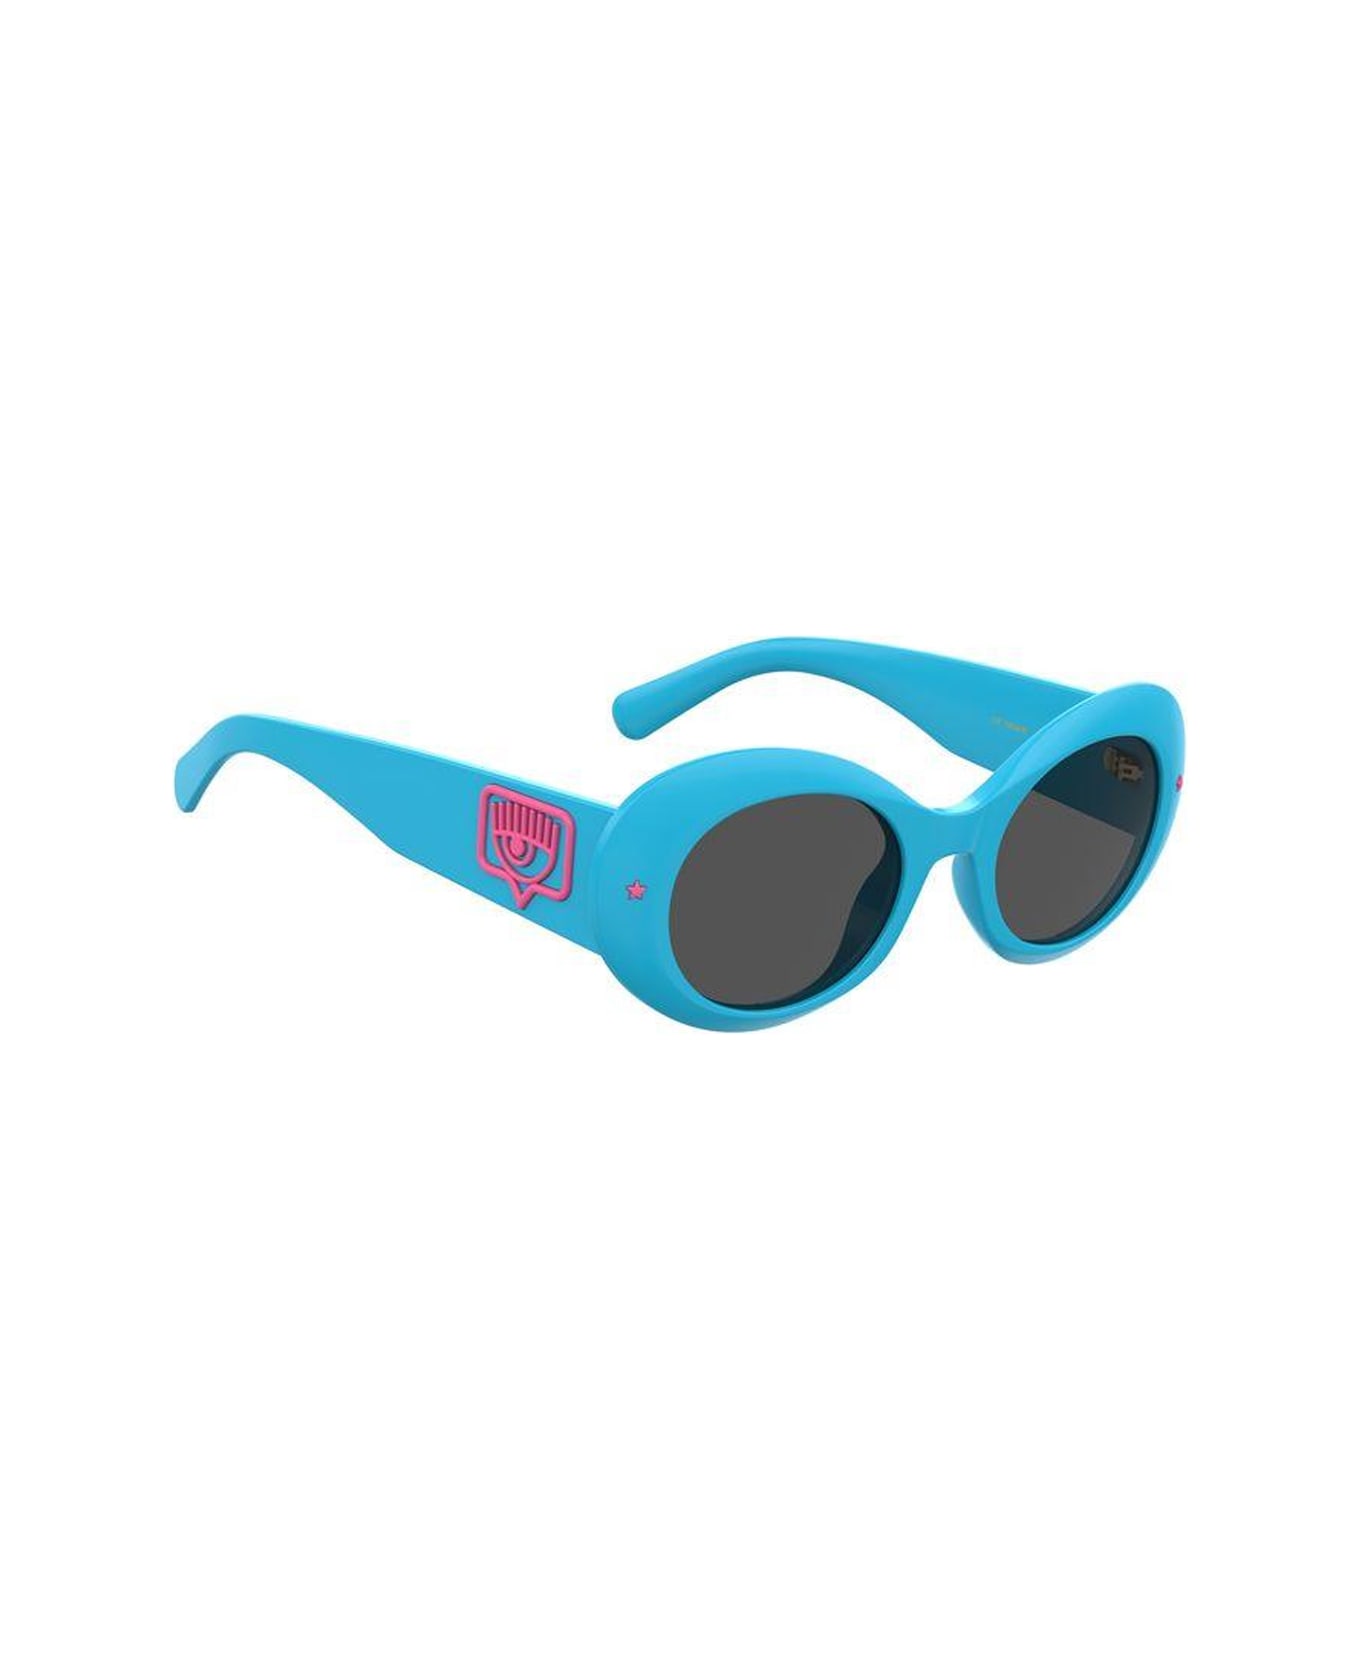 Chiara Ferragni 11em4bl0a - - Chiara Ferragni Sunglasses - Blu サングラス